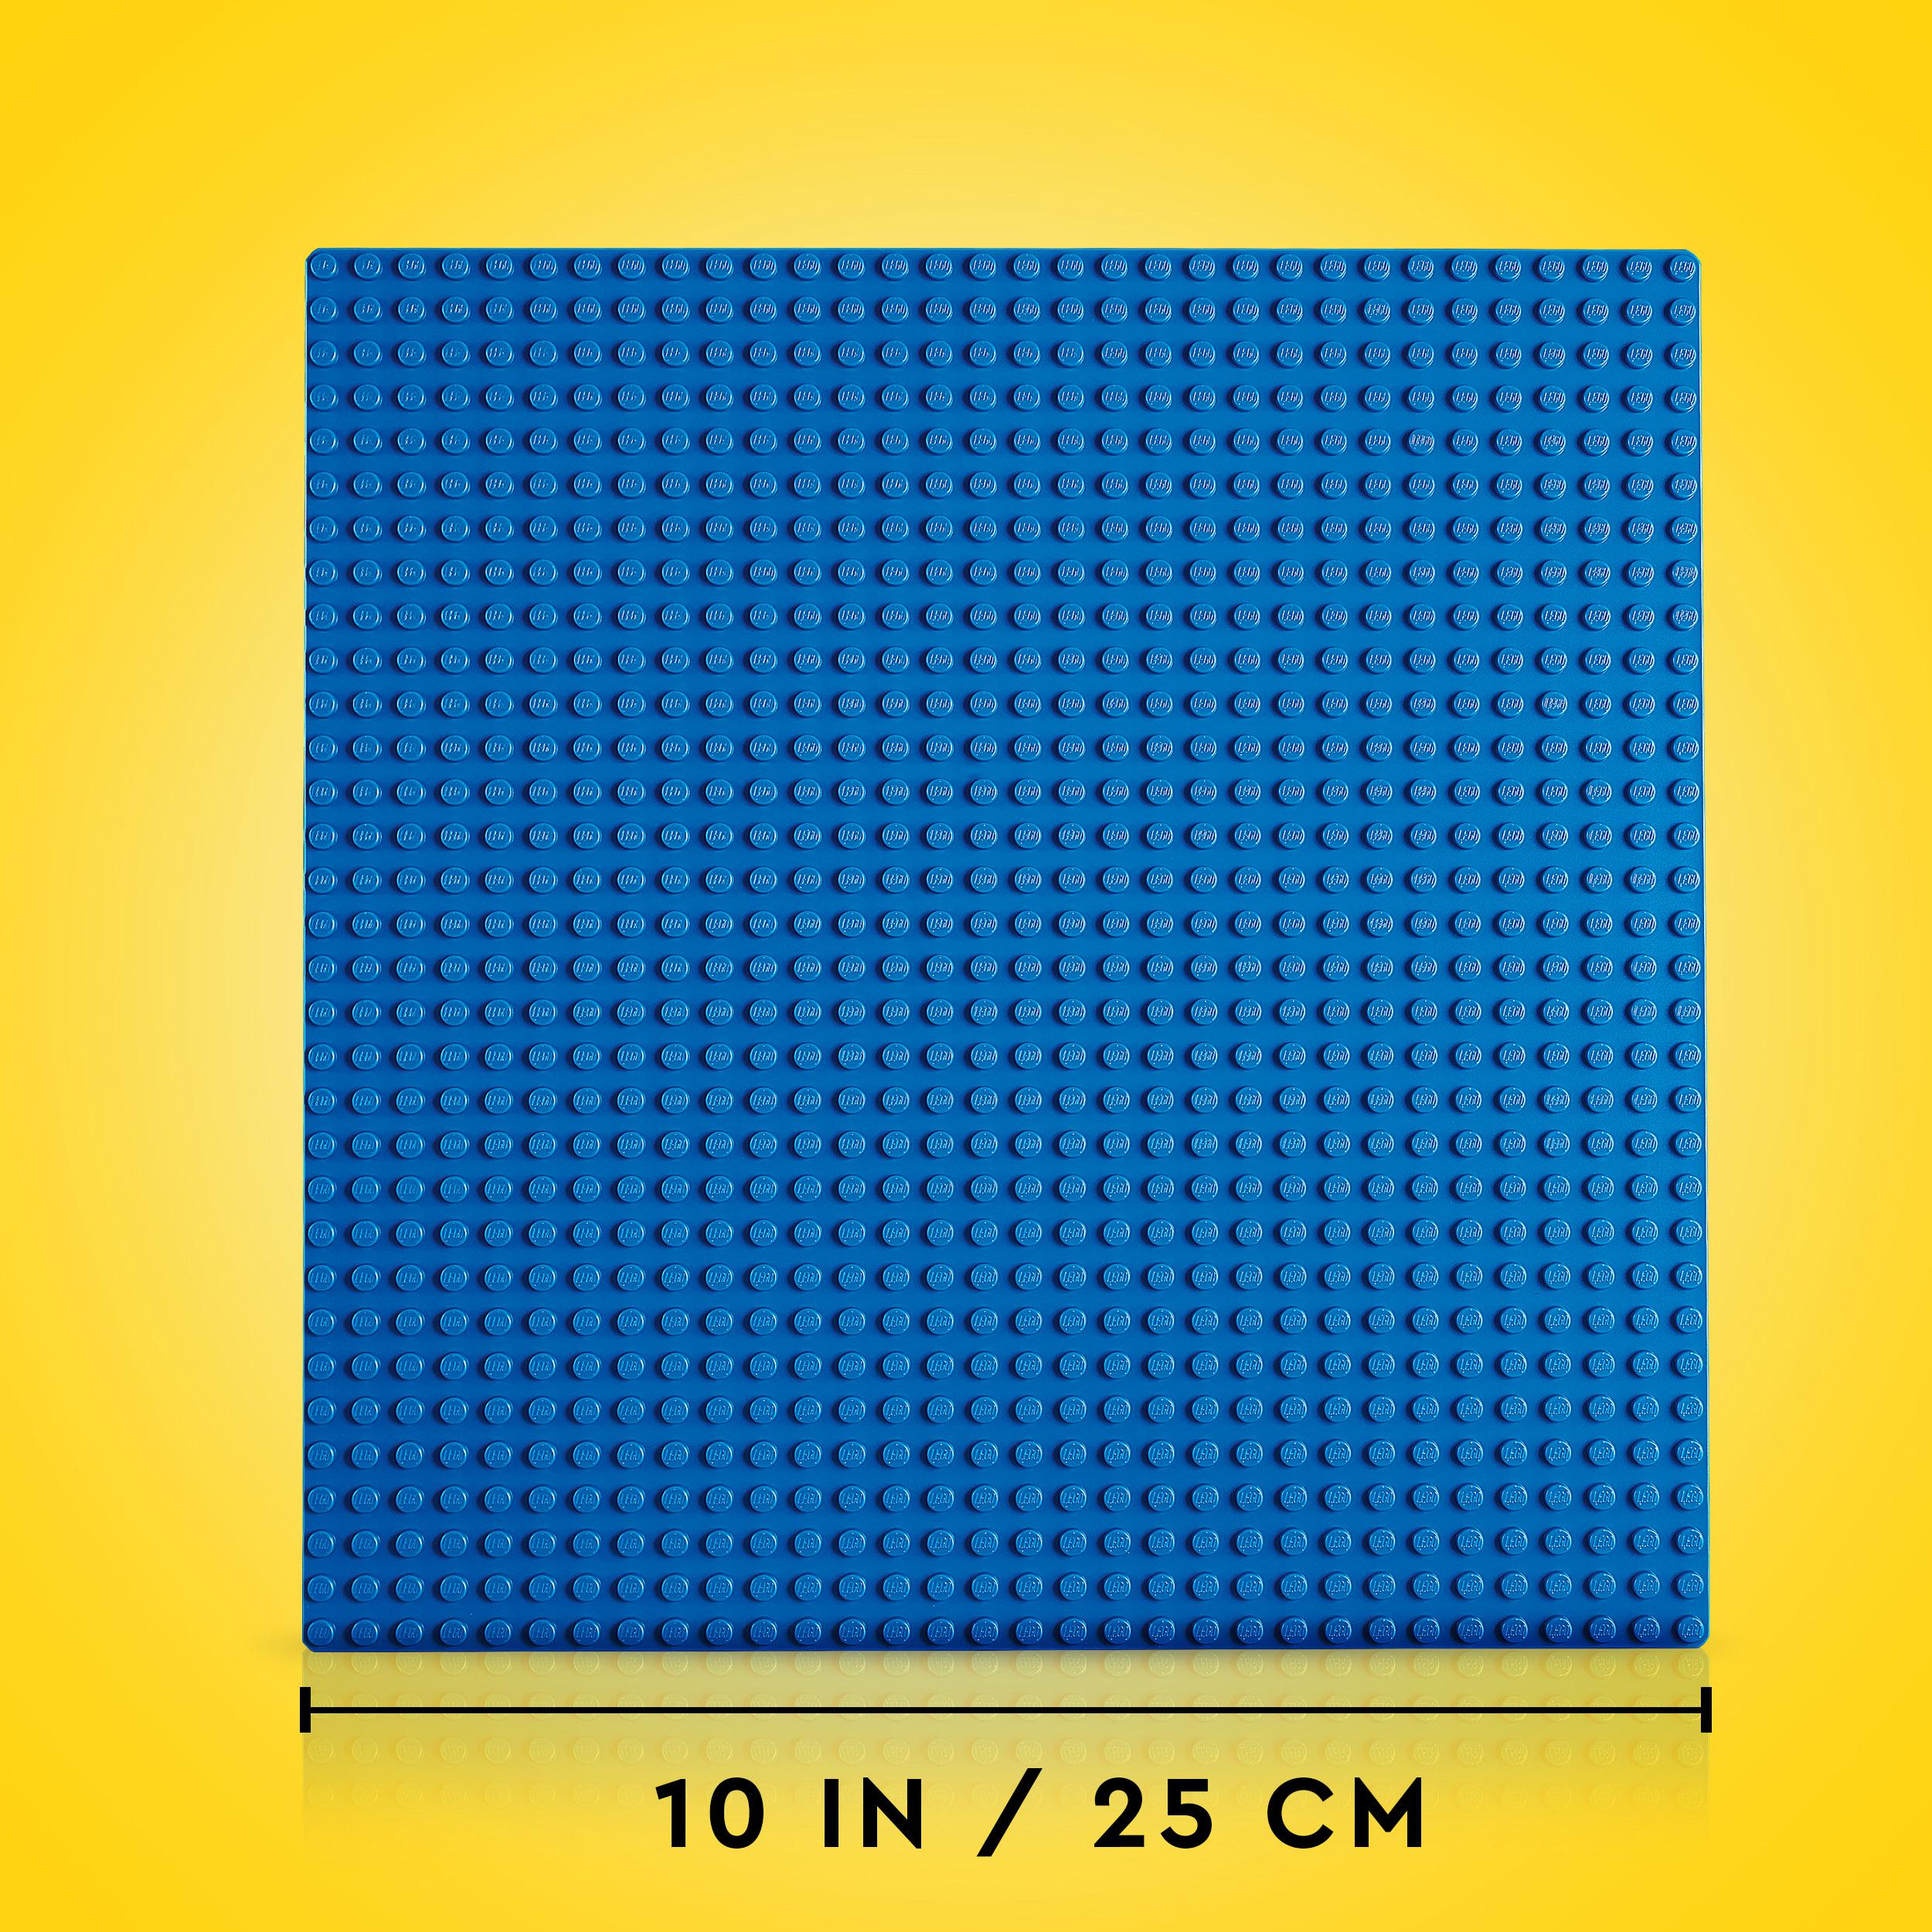 Blau Bausatz, LEGO Bauplatte Classic Blaue 11025